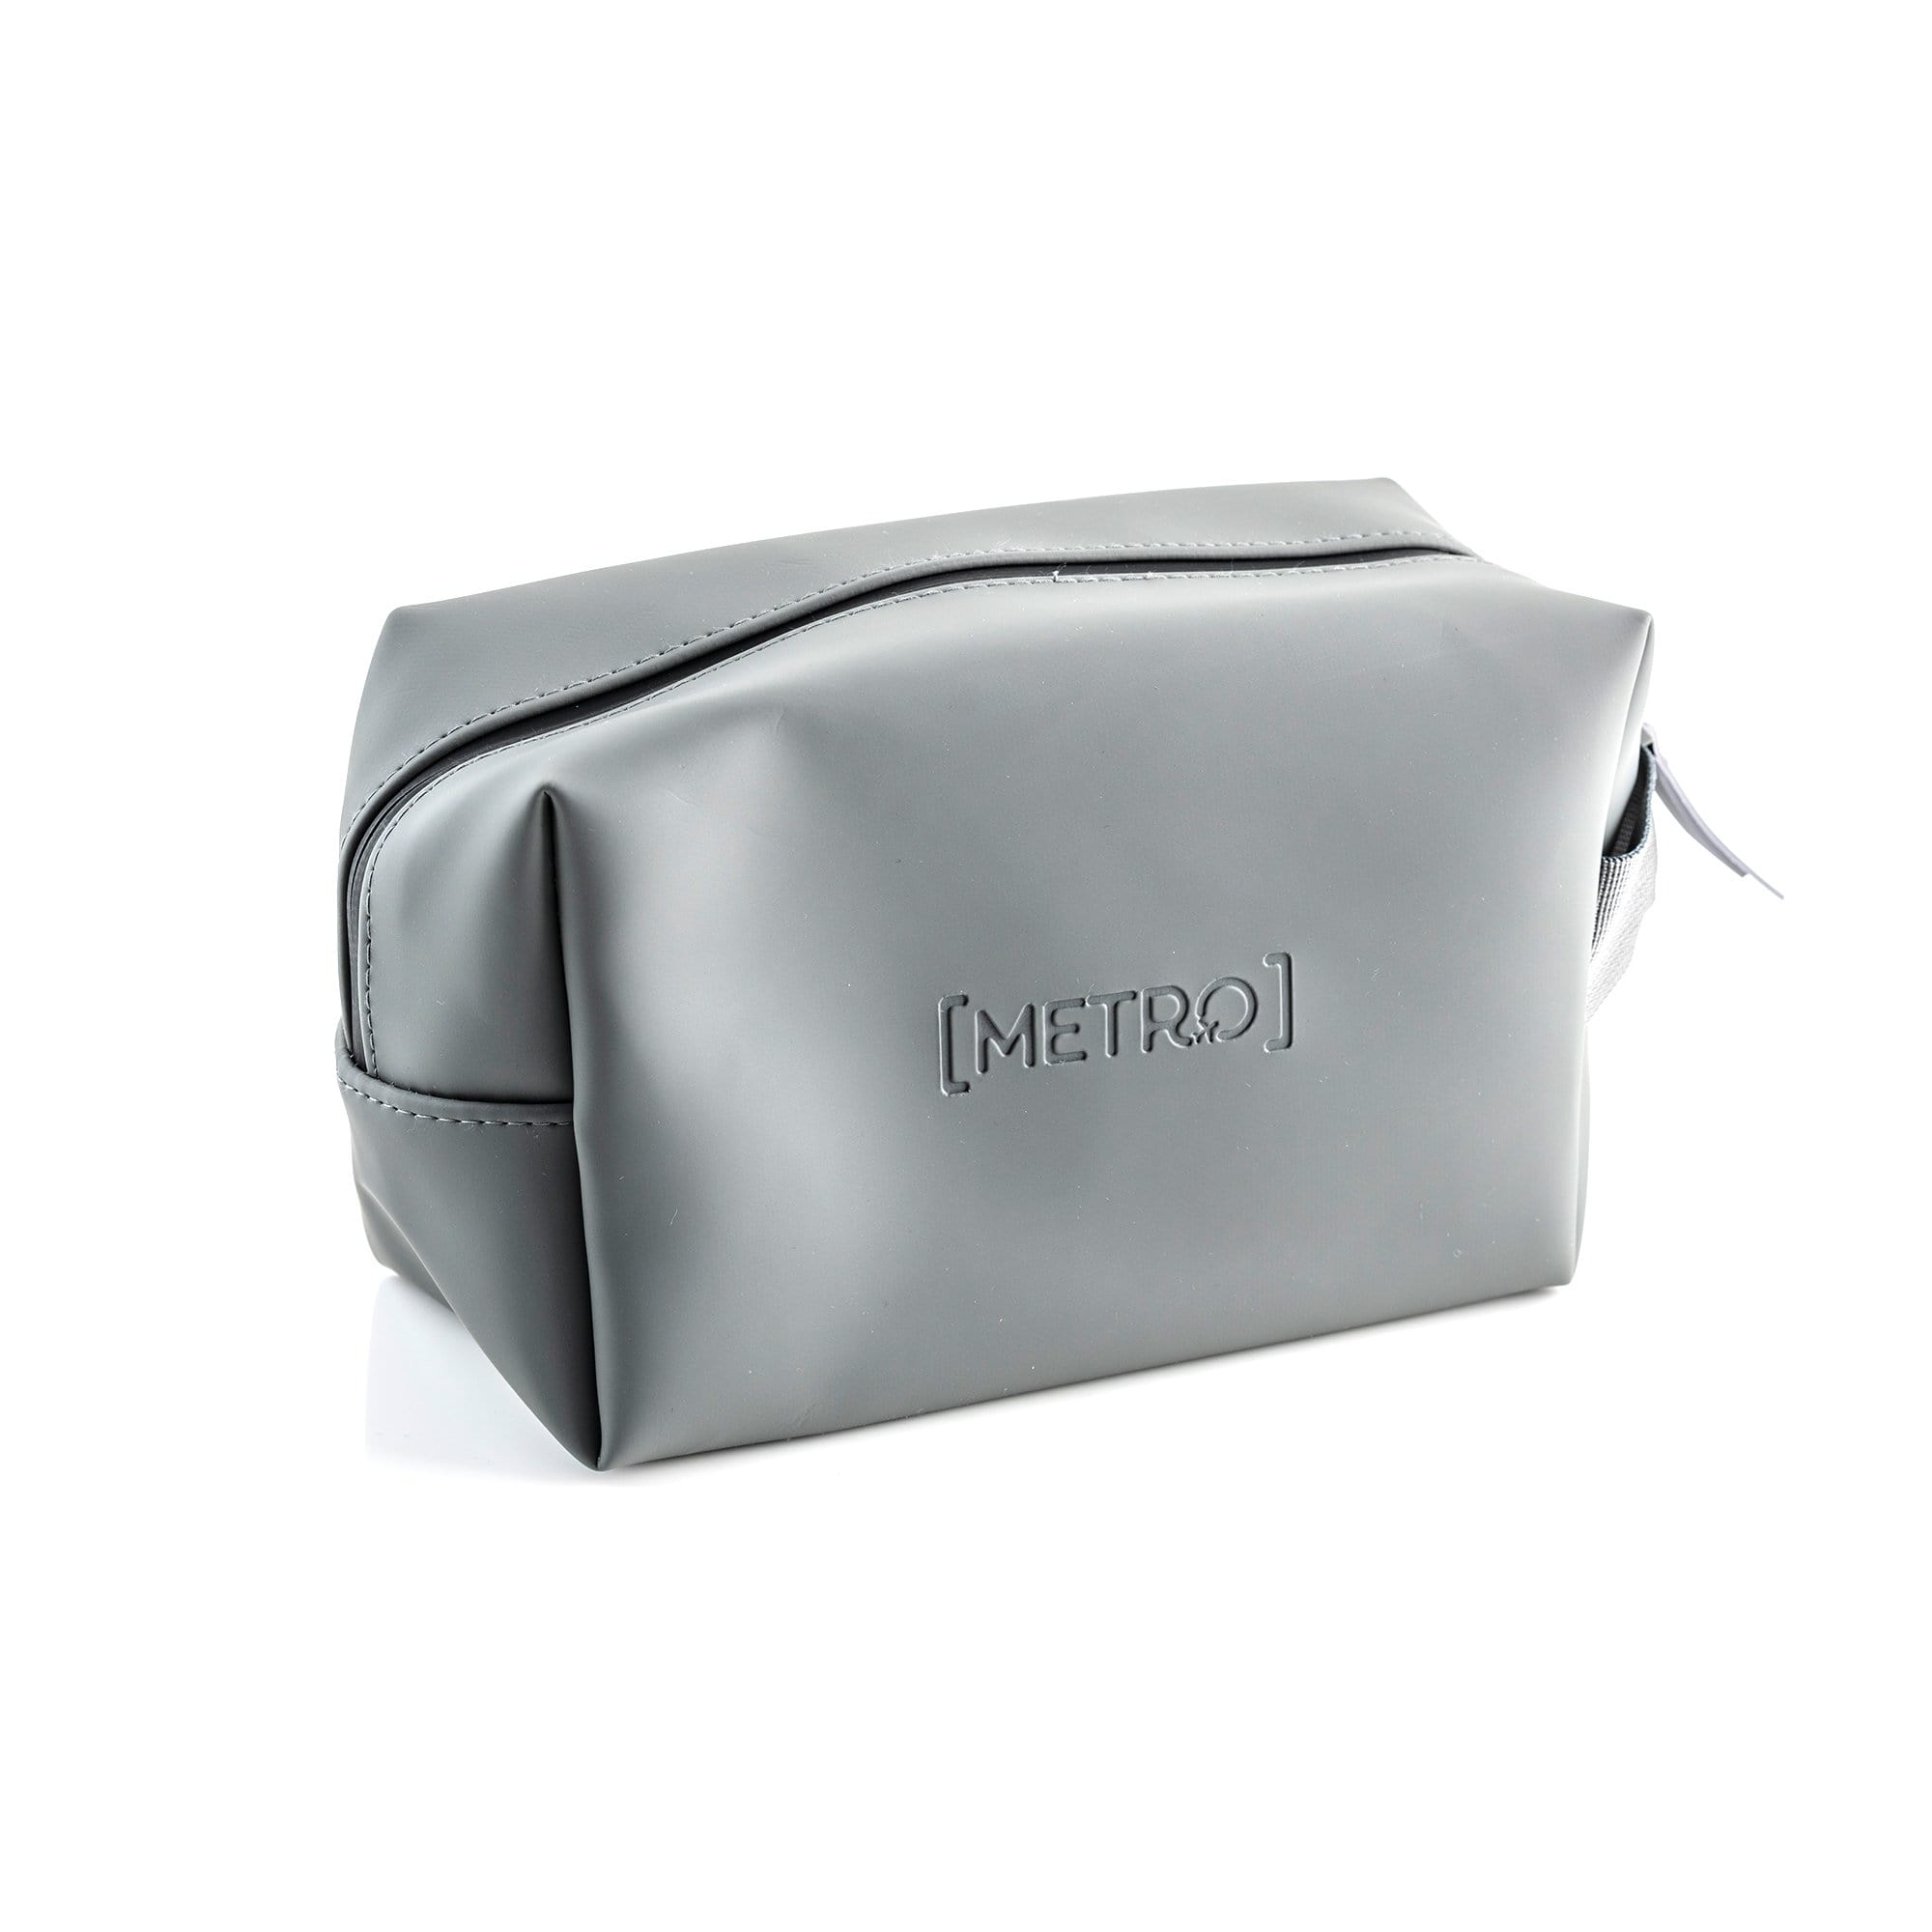 Metro Man - Waterproof Travel Toiletry Bag